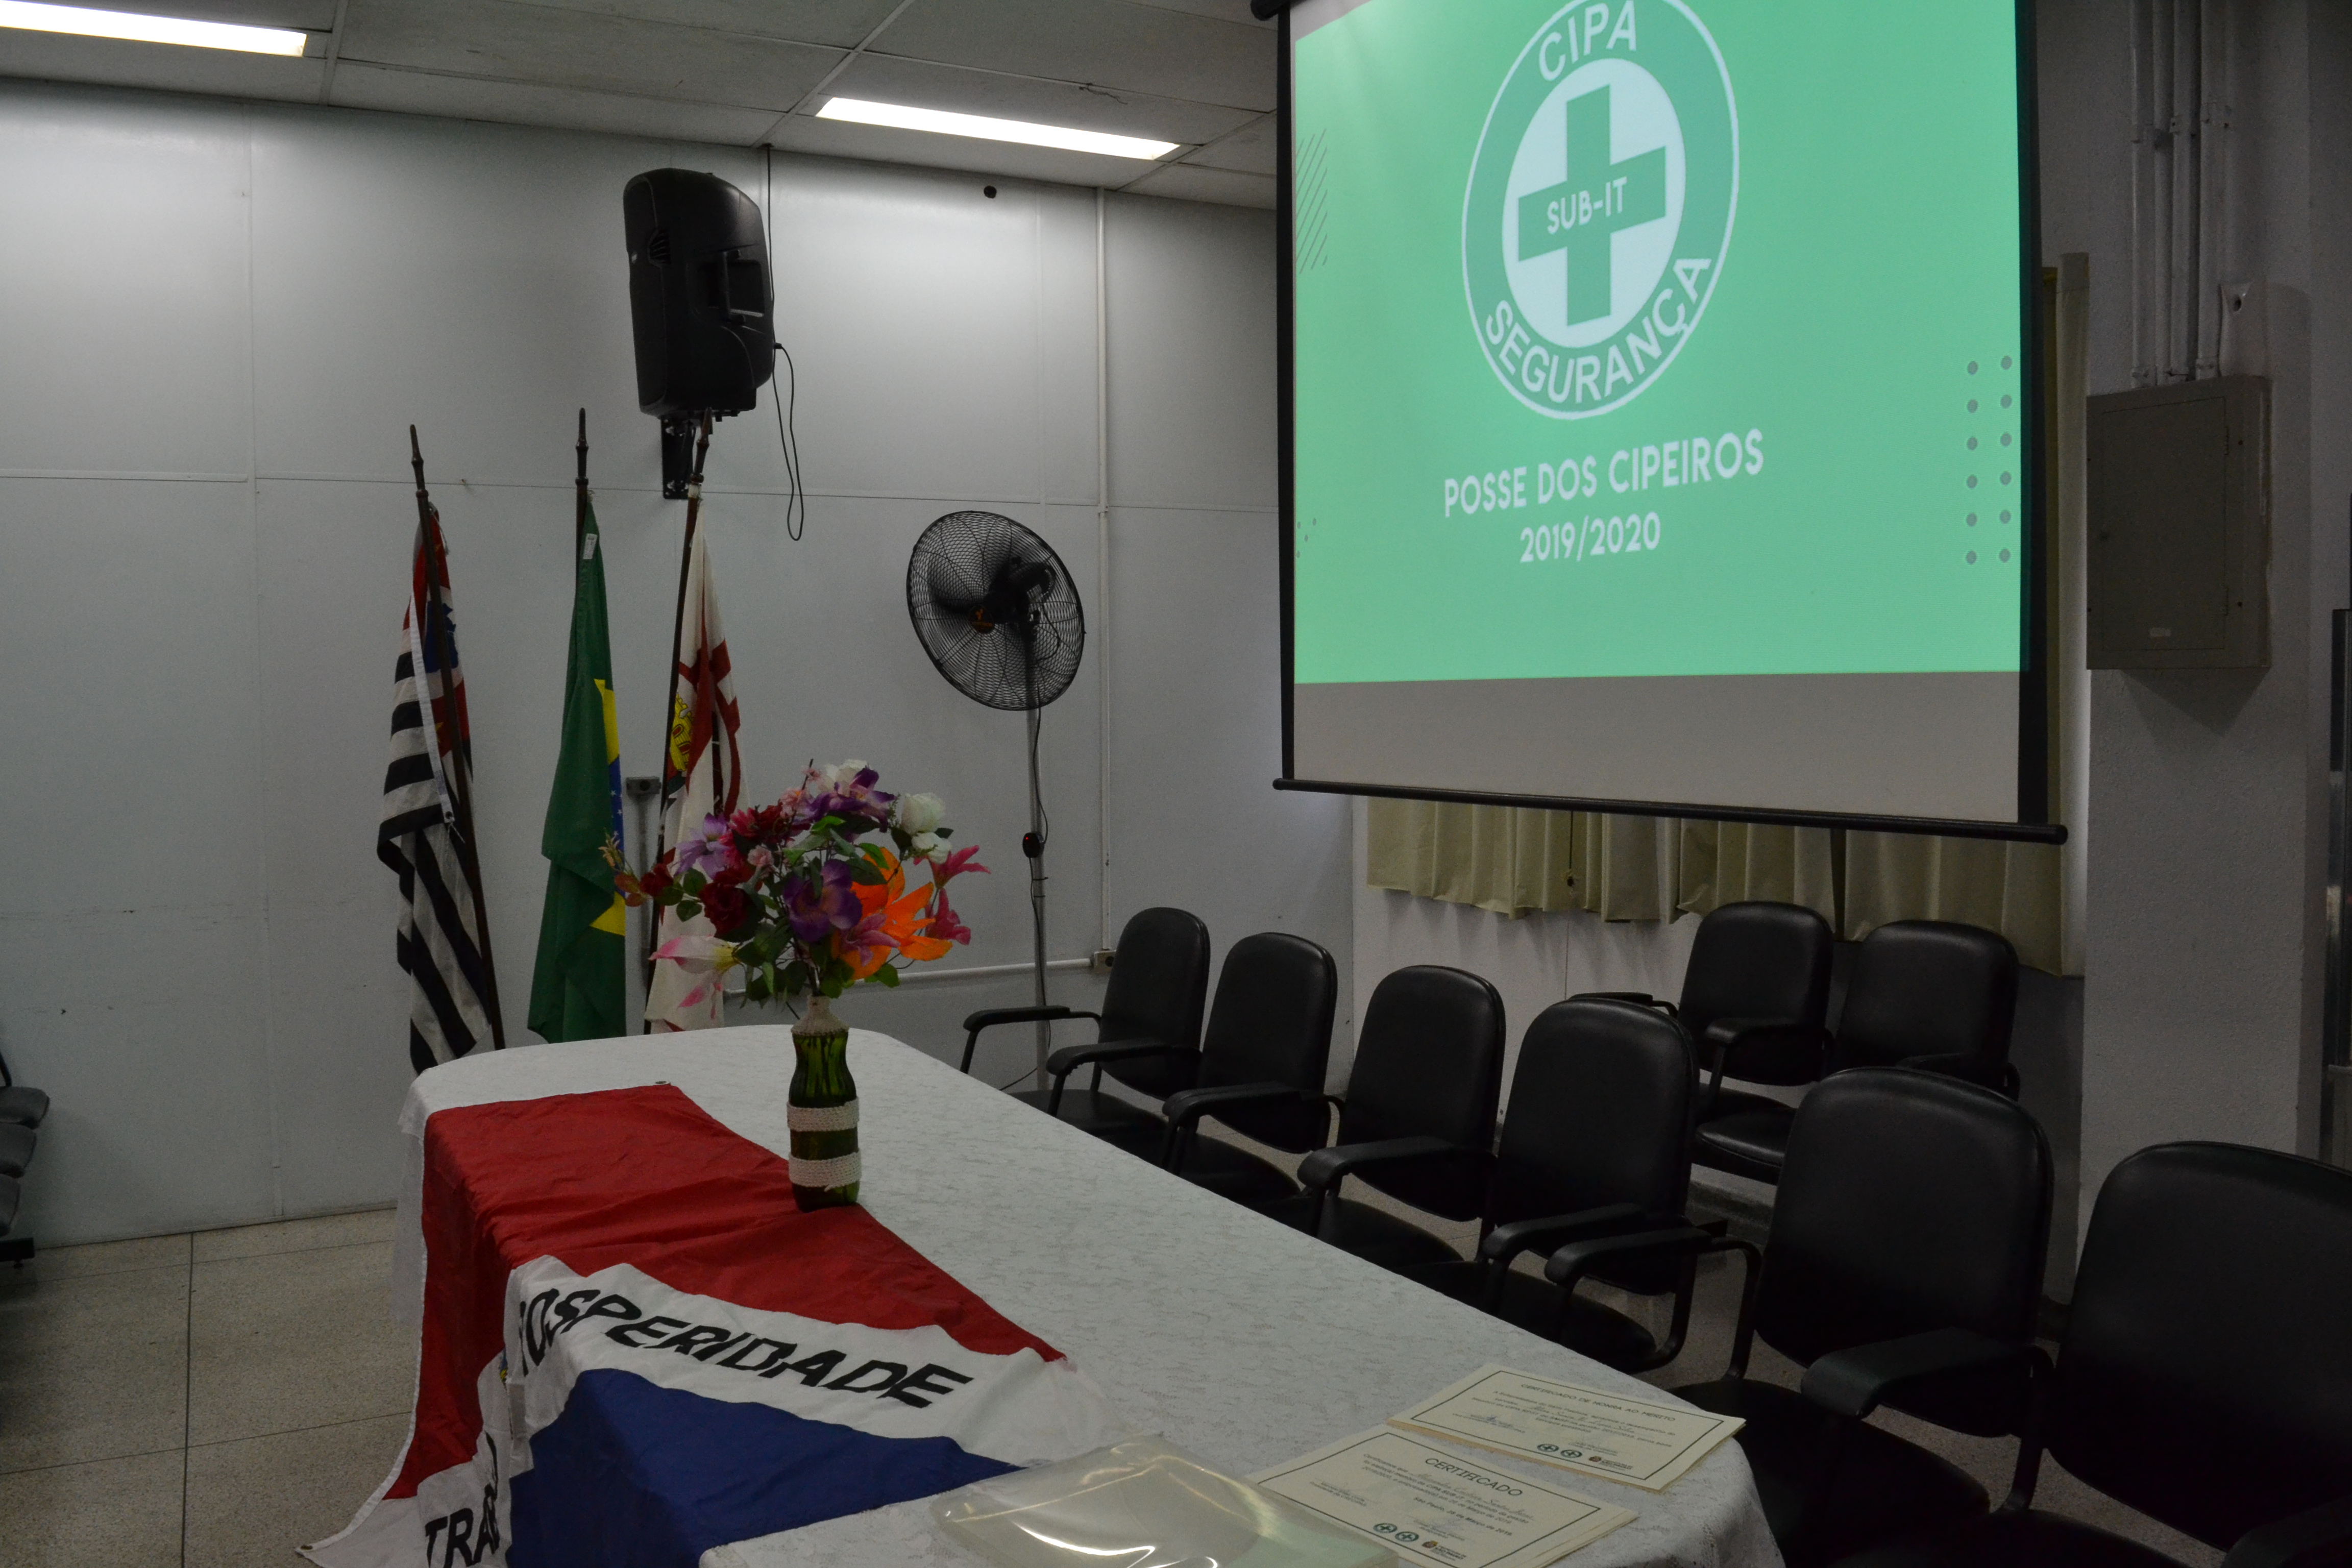 Foto feita em ambiente interno. Nela aparece três bandeiras: do Estado de São Paulo, do Brasil e do Município de São Paulo. A bandeira do Itaim Paulista está sobre uma mesa.